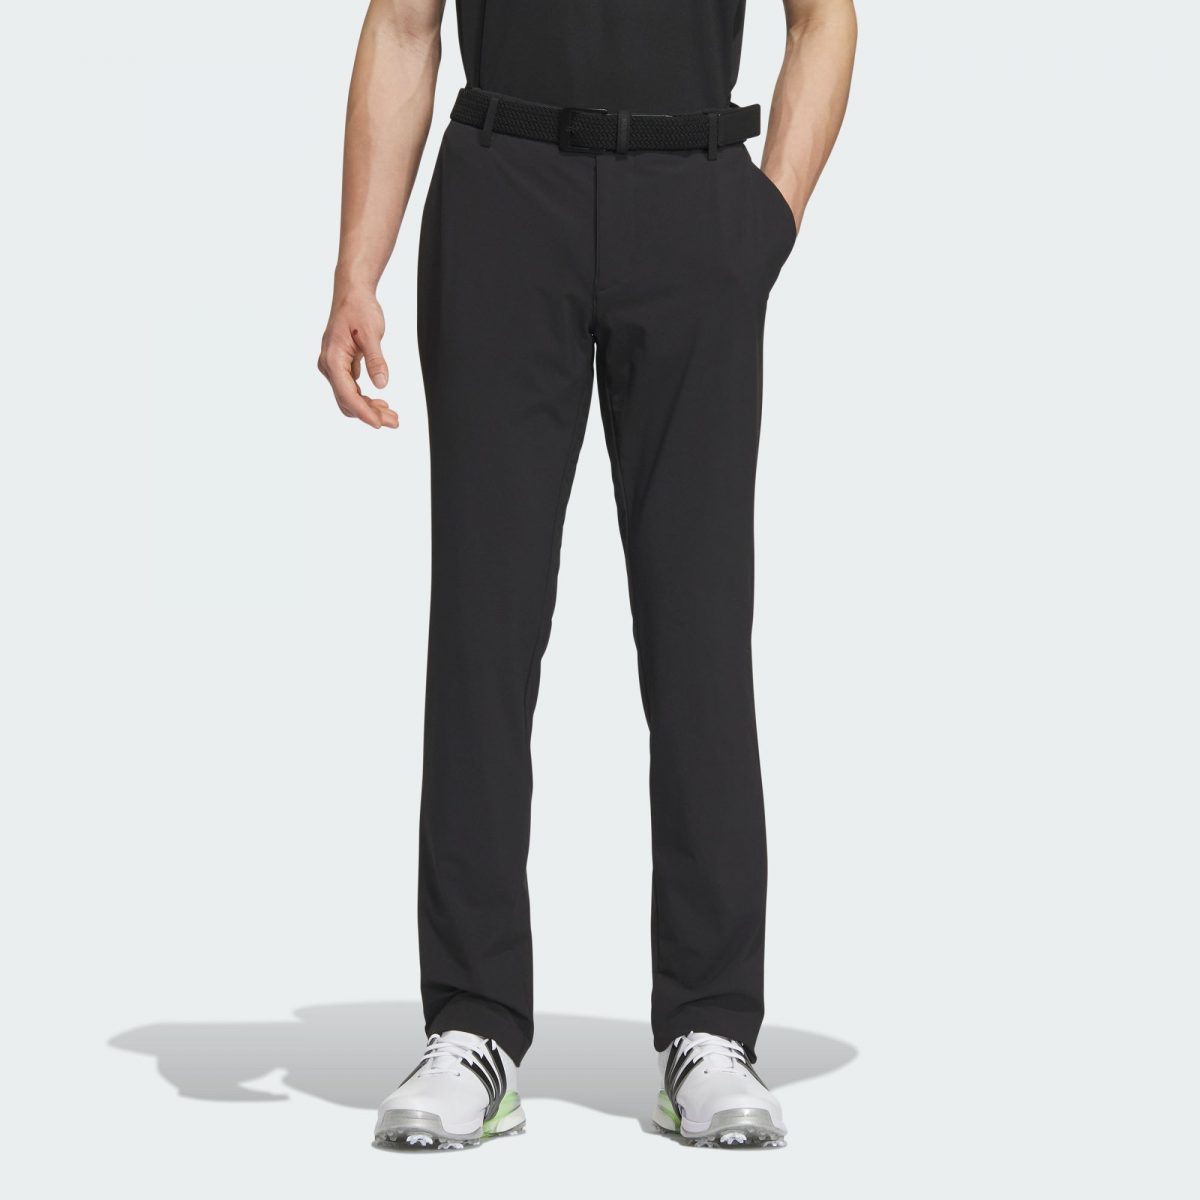 Мужские брюки adidas STRETCH VENTILATED PANTS черные фото